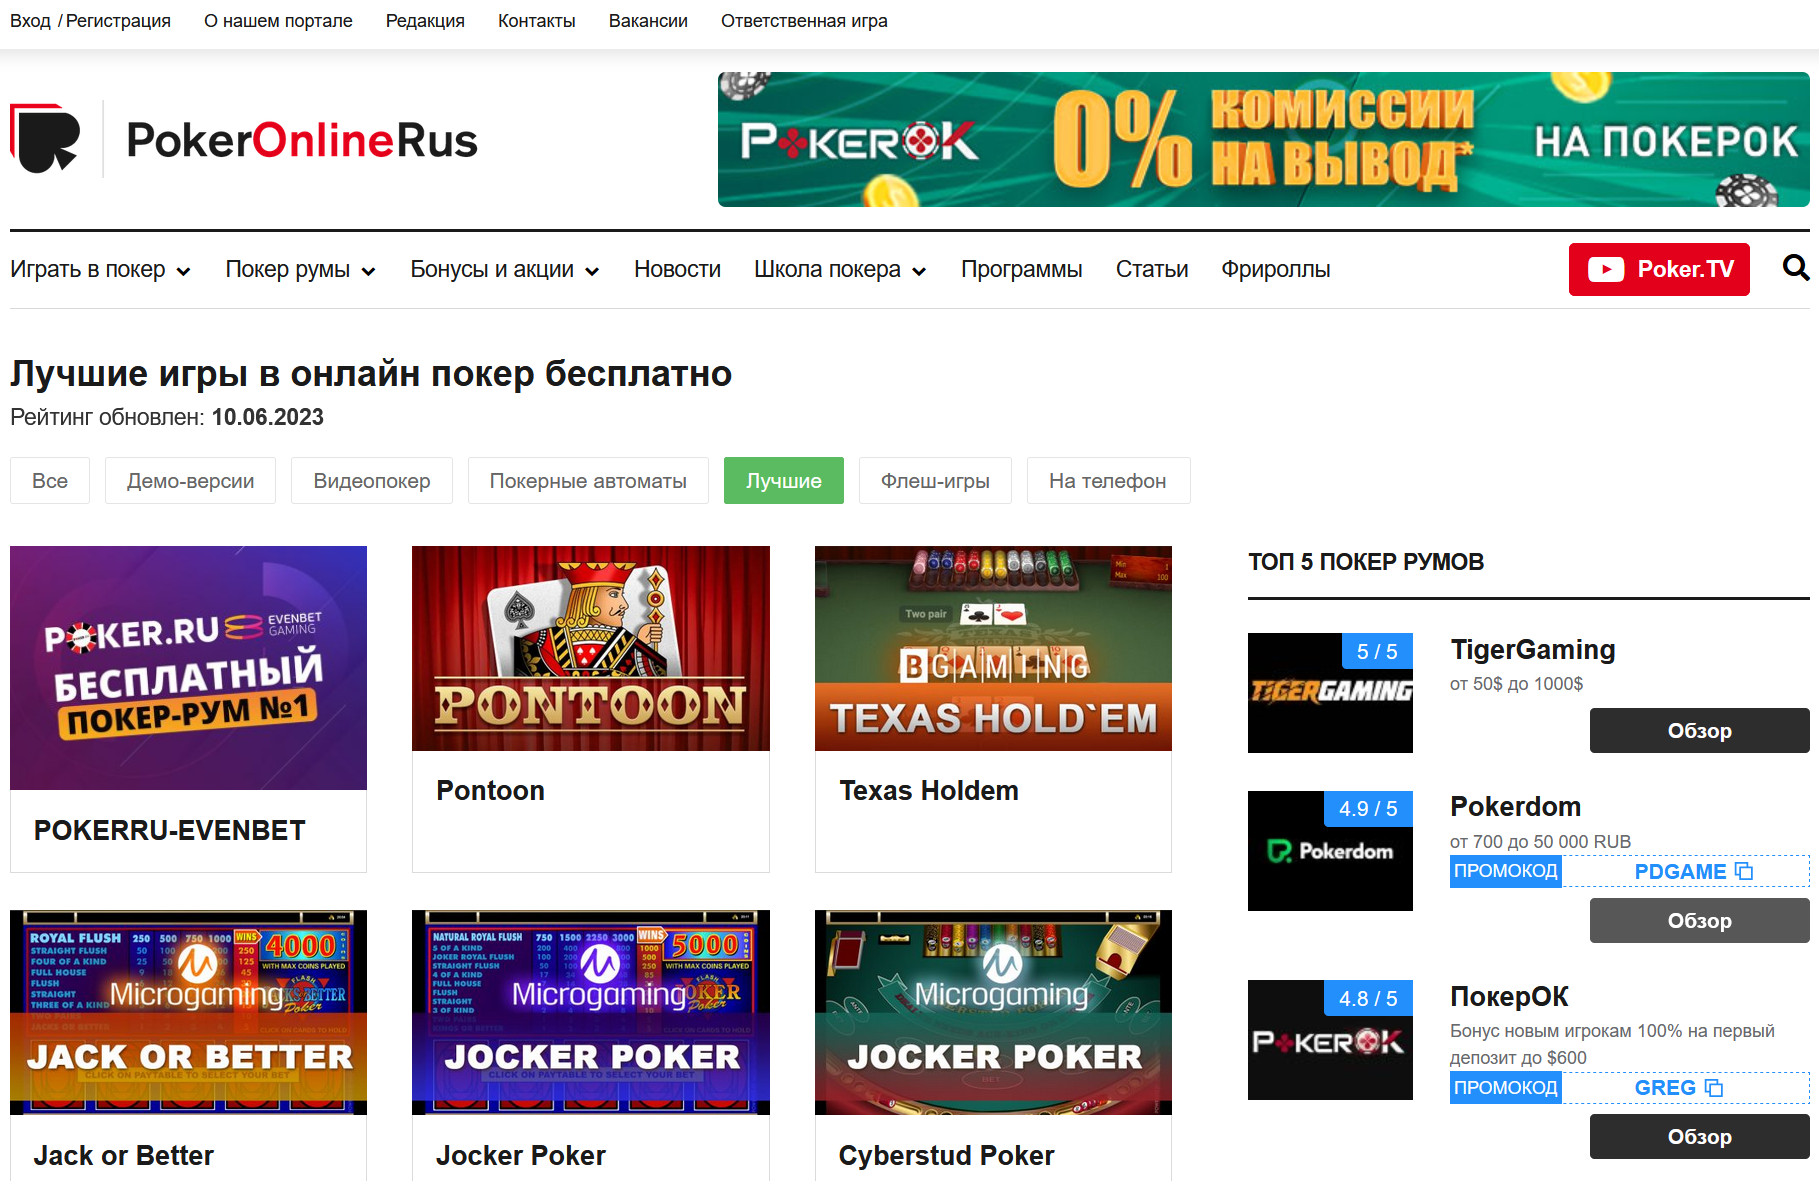 Как бесплатные онлайн игры в покер стали популярными в интернете?